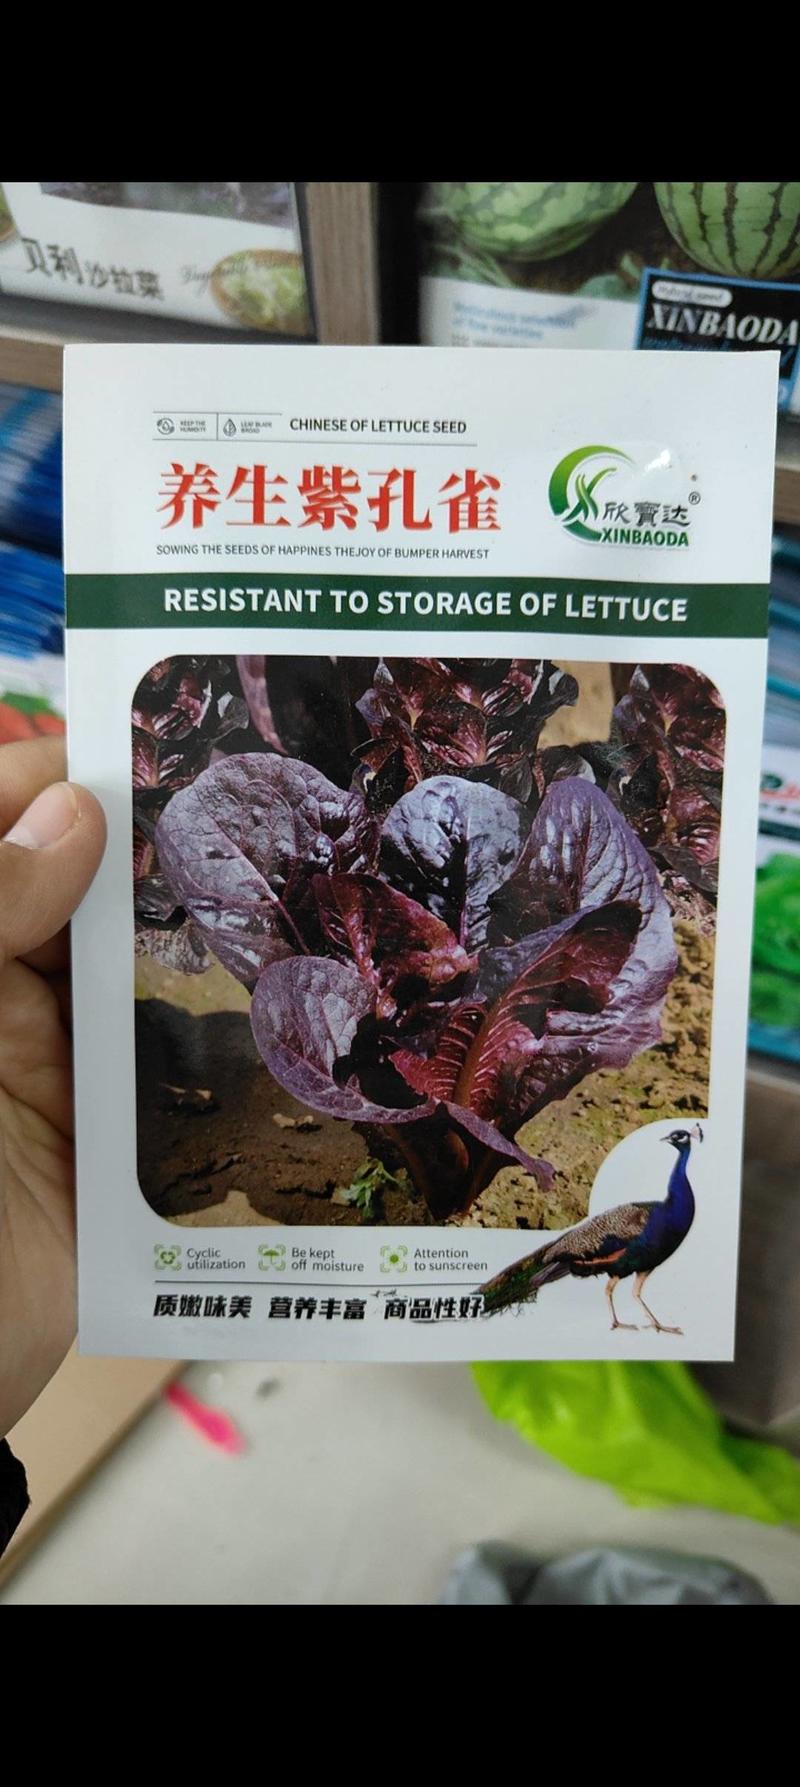 紫色孔雀菜种子特色产品沙拉菜四季种植口感好叶片肥厚